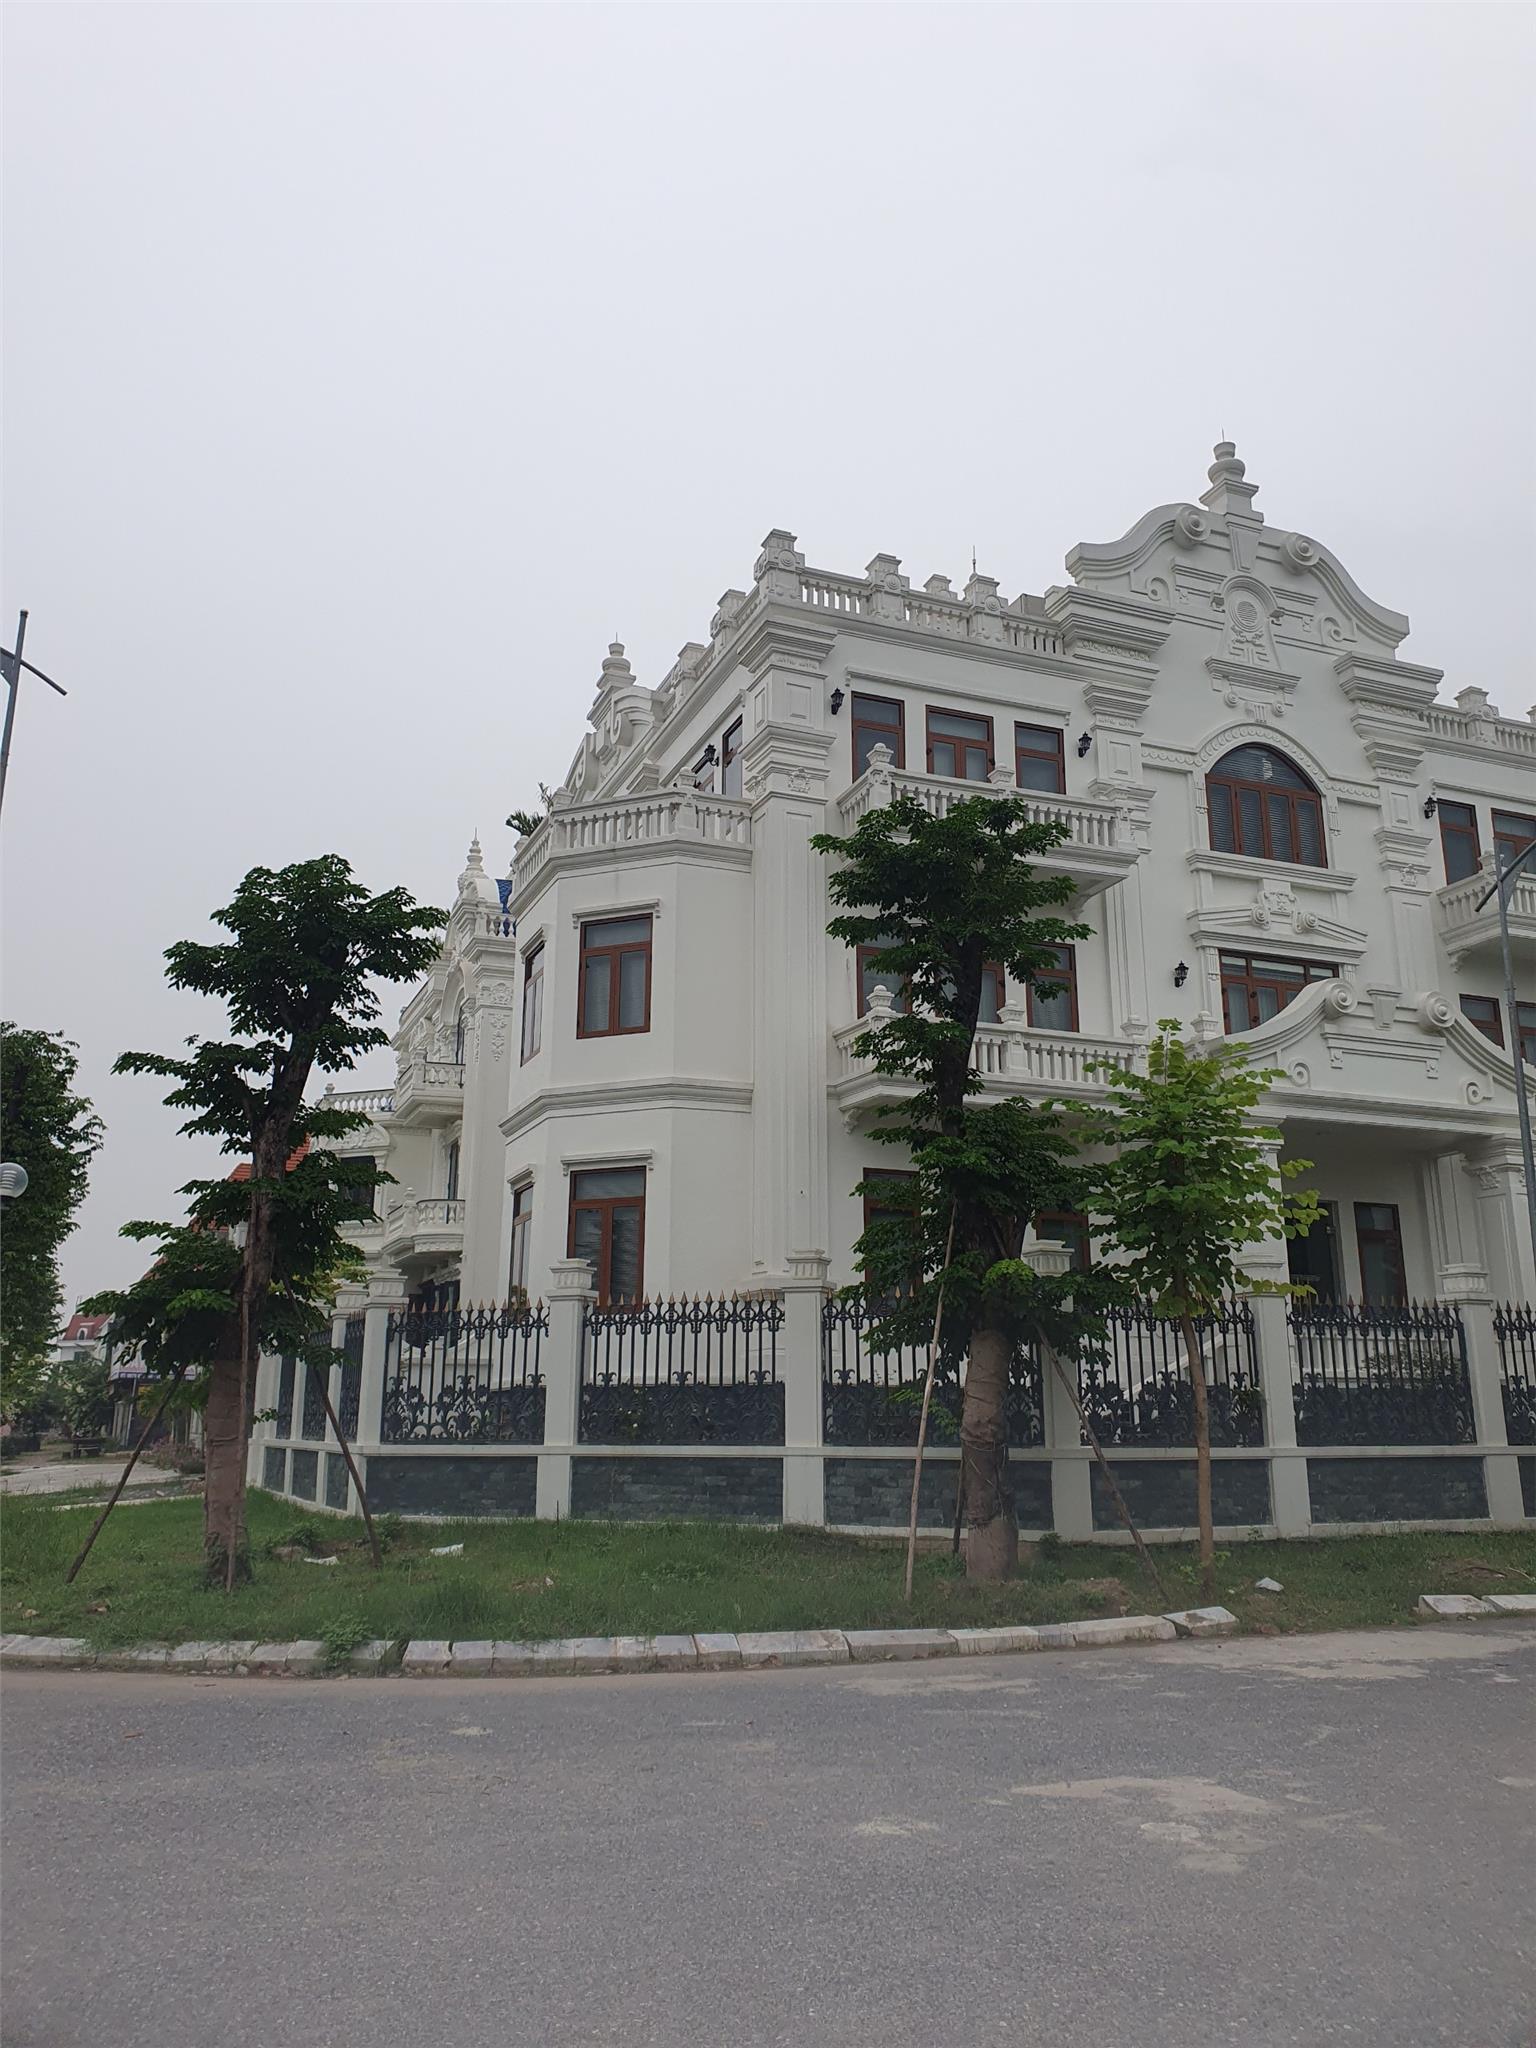 Bán liền kề biệt thự khu đô thị Văn Quán 222m2 x 4 tầng, giá đầu tư, nhà đẹp ở ngay, giảm 1,5 tỷ